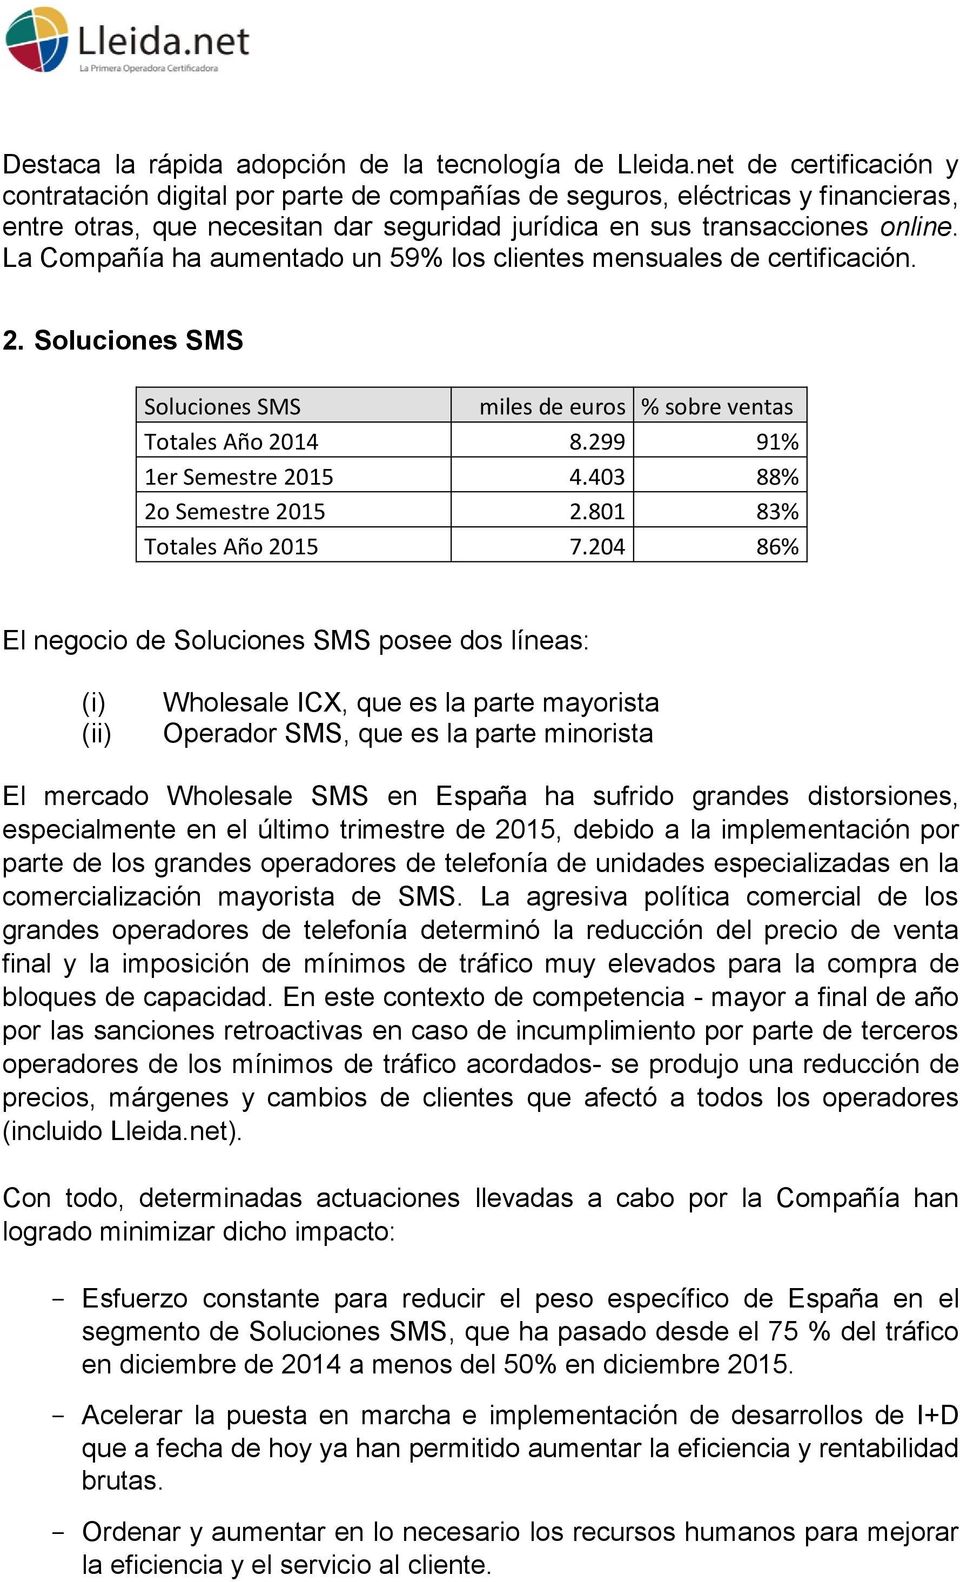 La Compañía ha aumentado un 59% los clientes mensuales de certificación. 2. Soluciones SMS Soluciones SMS miles de euros % sobre ventas Totales Año 2014 8.299 91% 1er Semestre 2015 4.